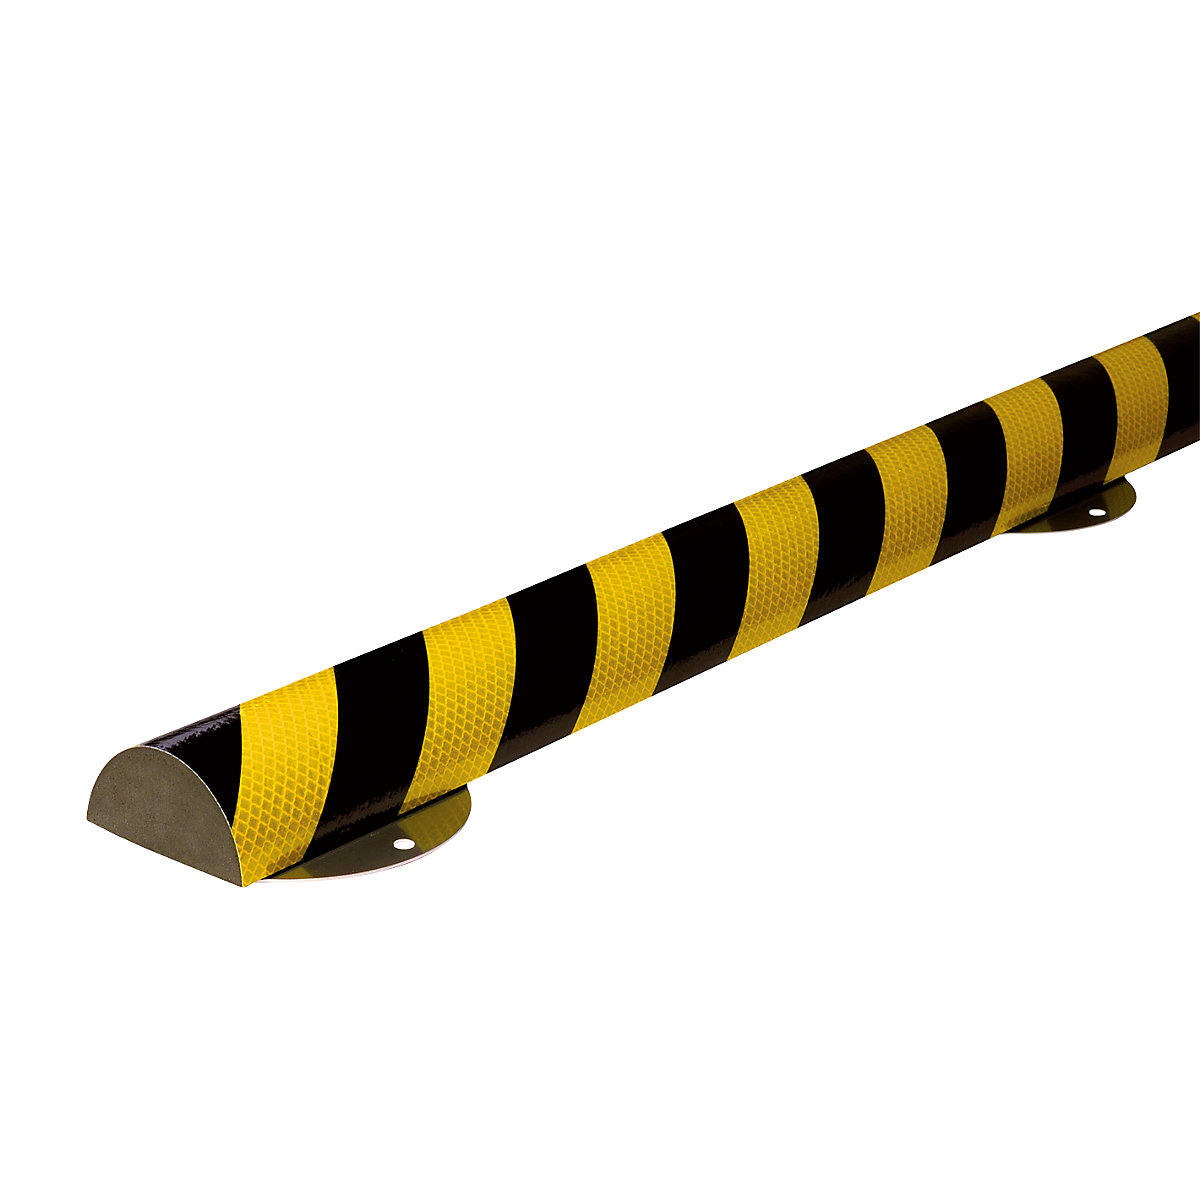 Protecție pentru suprafețe Knuffi® cu șină de montaj – SHG, tip C+, bucată de 1 m, galben / negru, reflectorizant